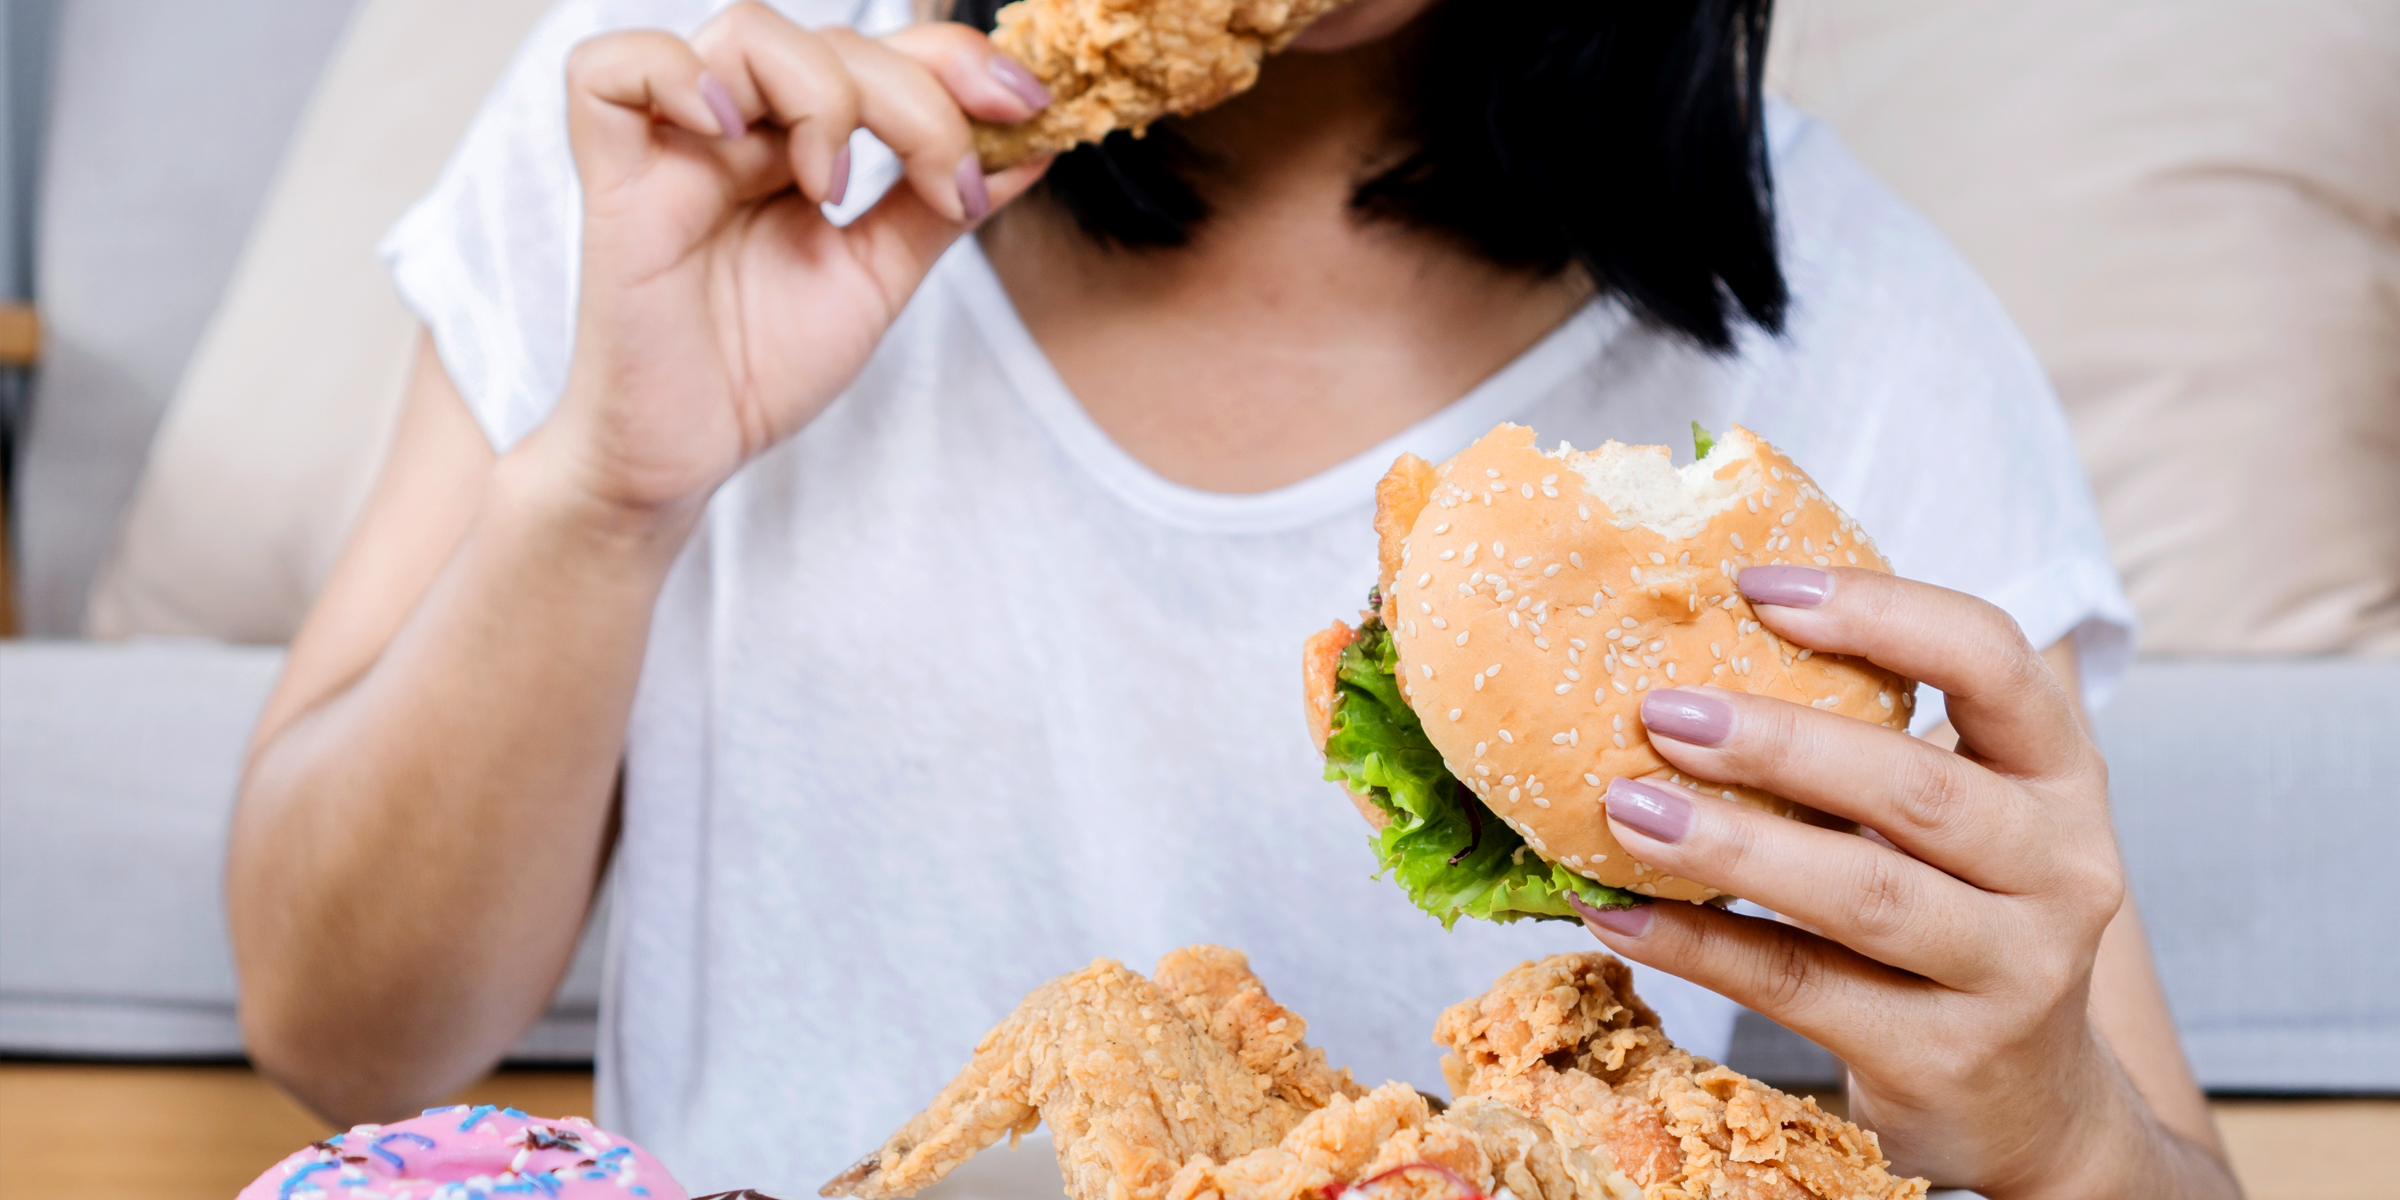 Quelqu'un qui mange un hamburger | Source : Shutterstock